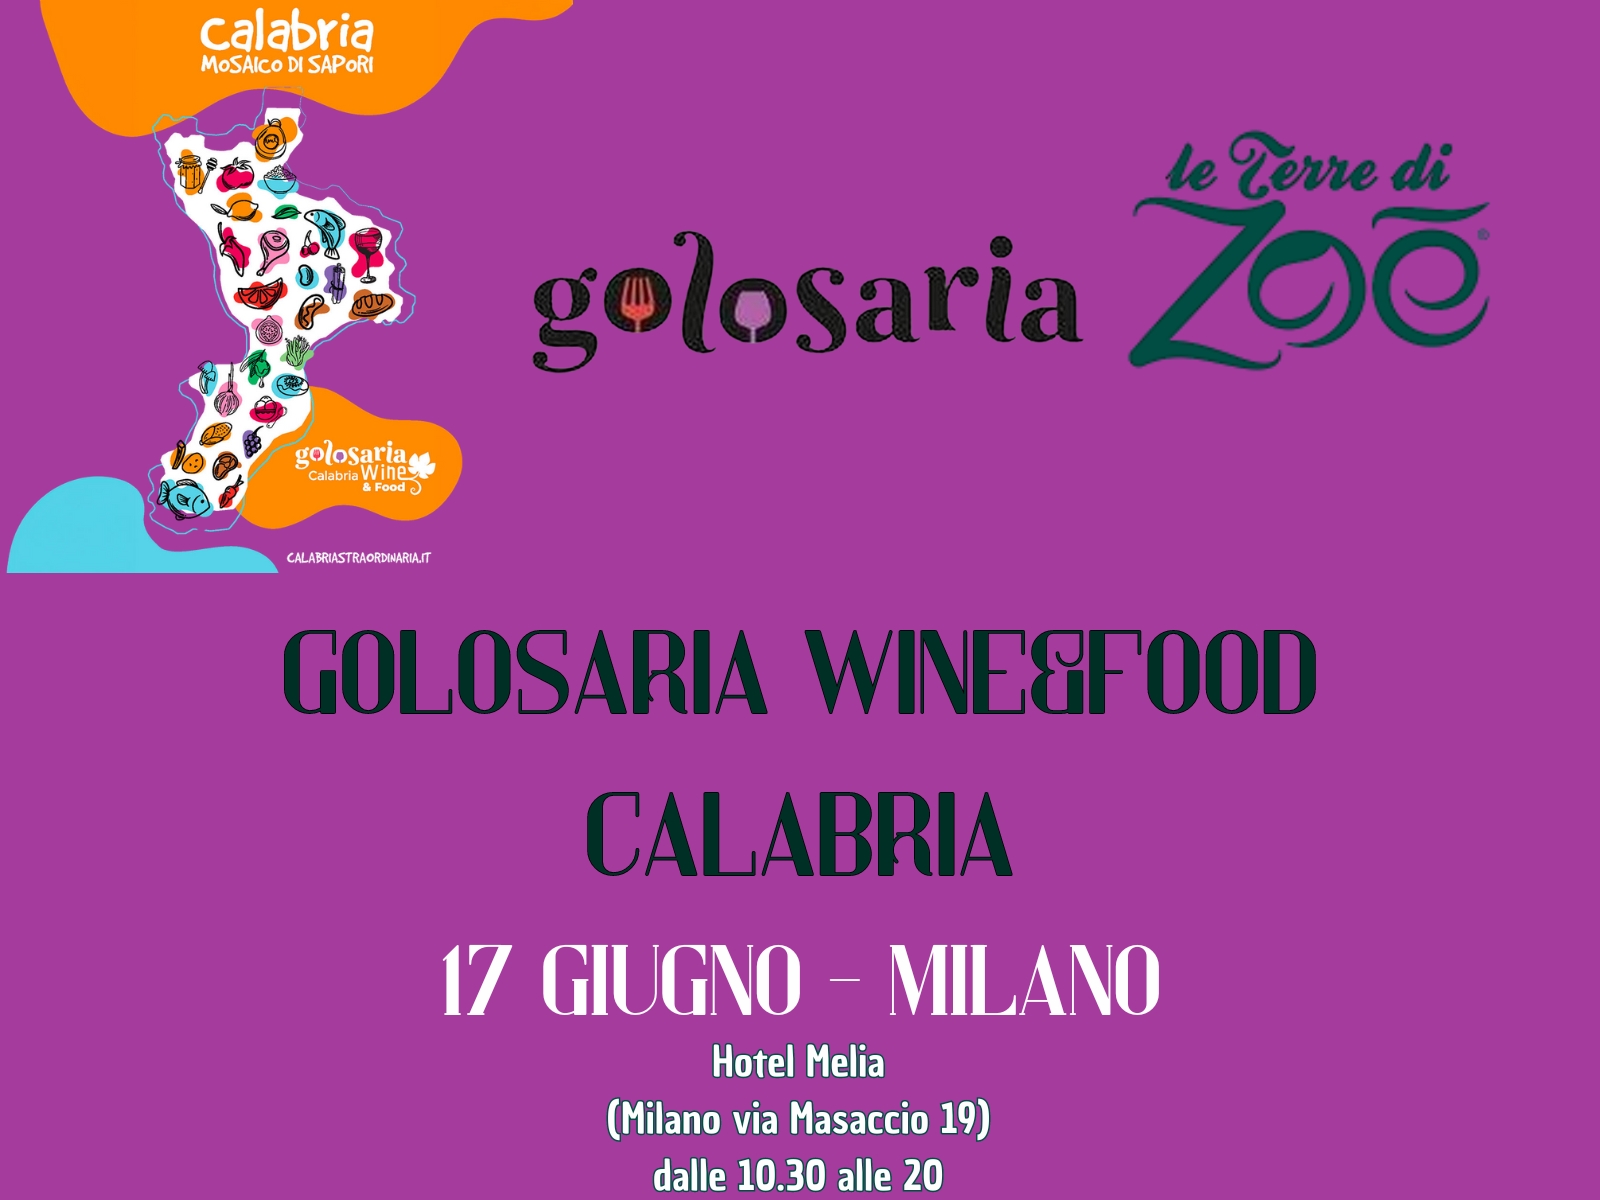 Esponiamo a Golosaria Wine e Food Calabria Le terre di zoè